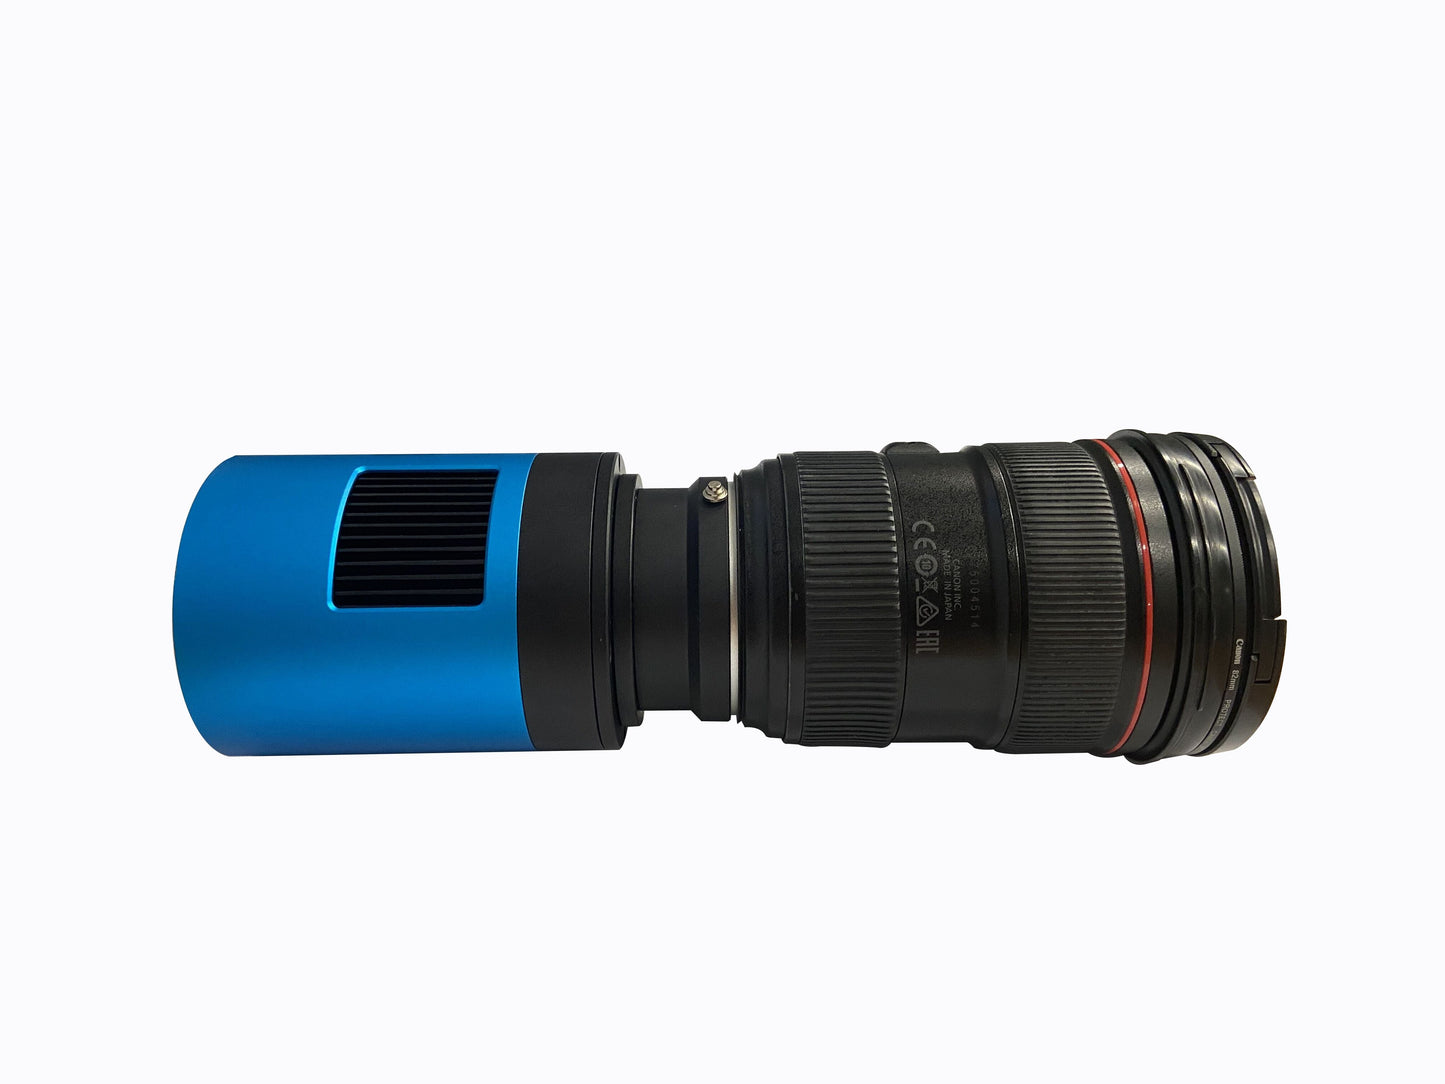 EOS Lens EF/F42 Adapter for ATR Camera